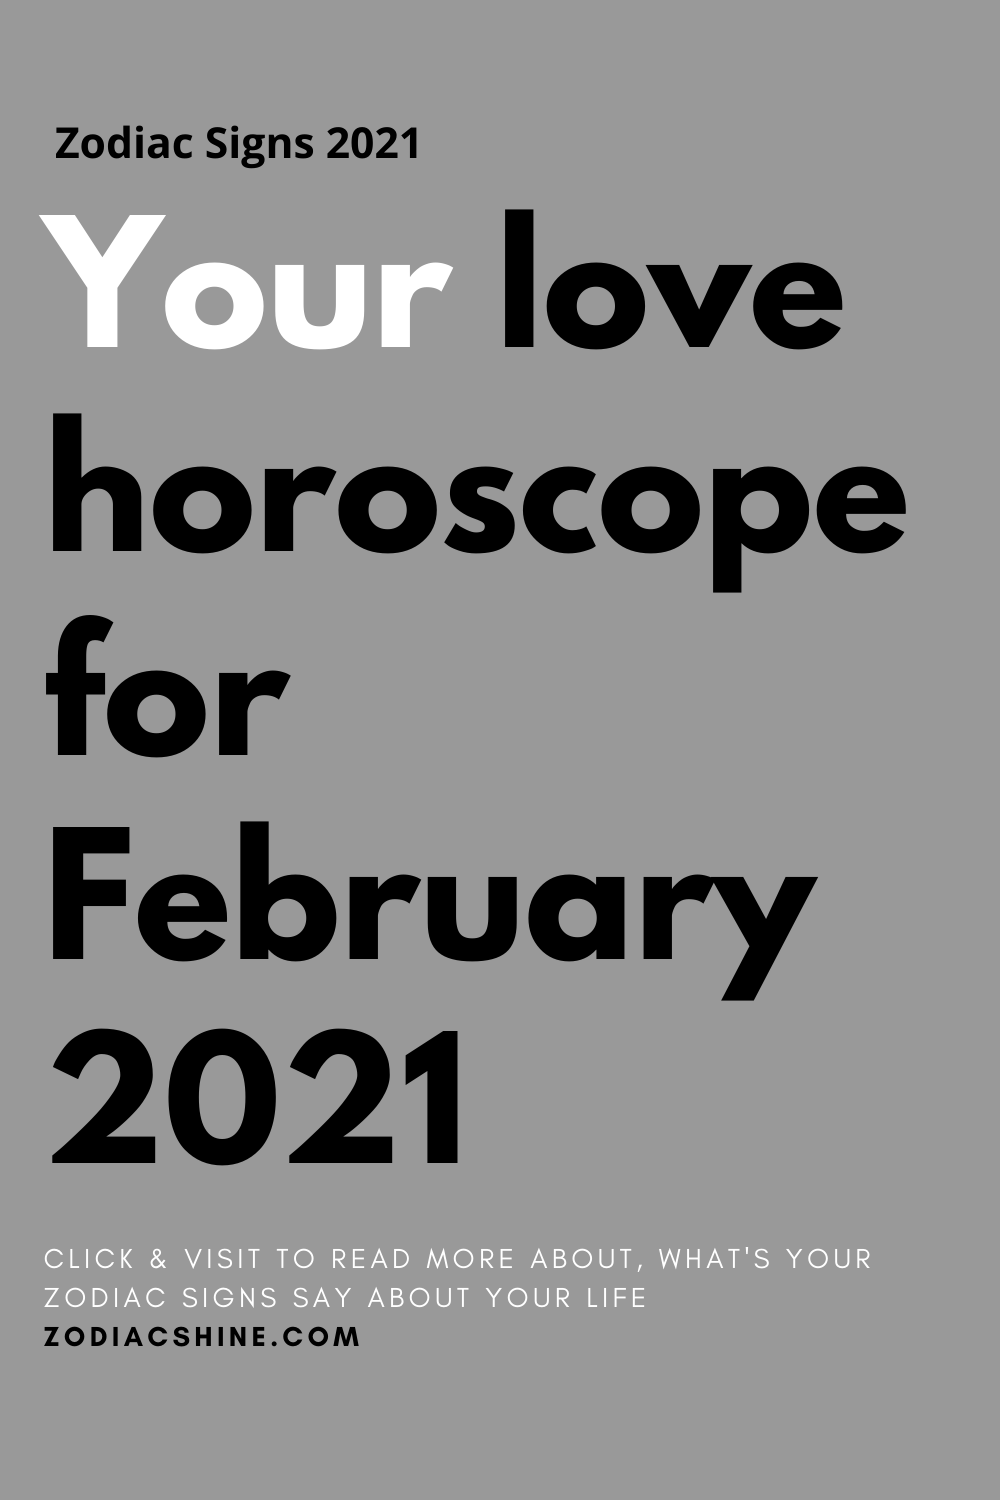 Your love horoscope for February 2021